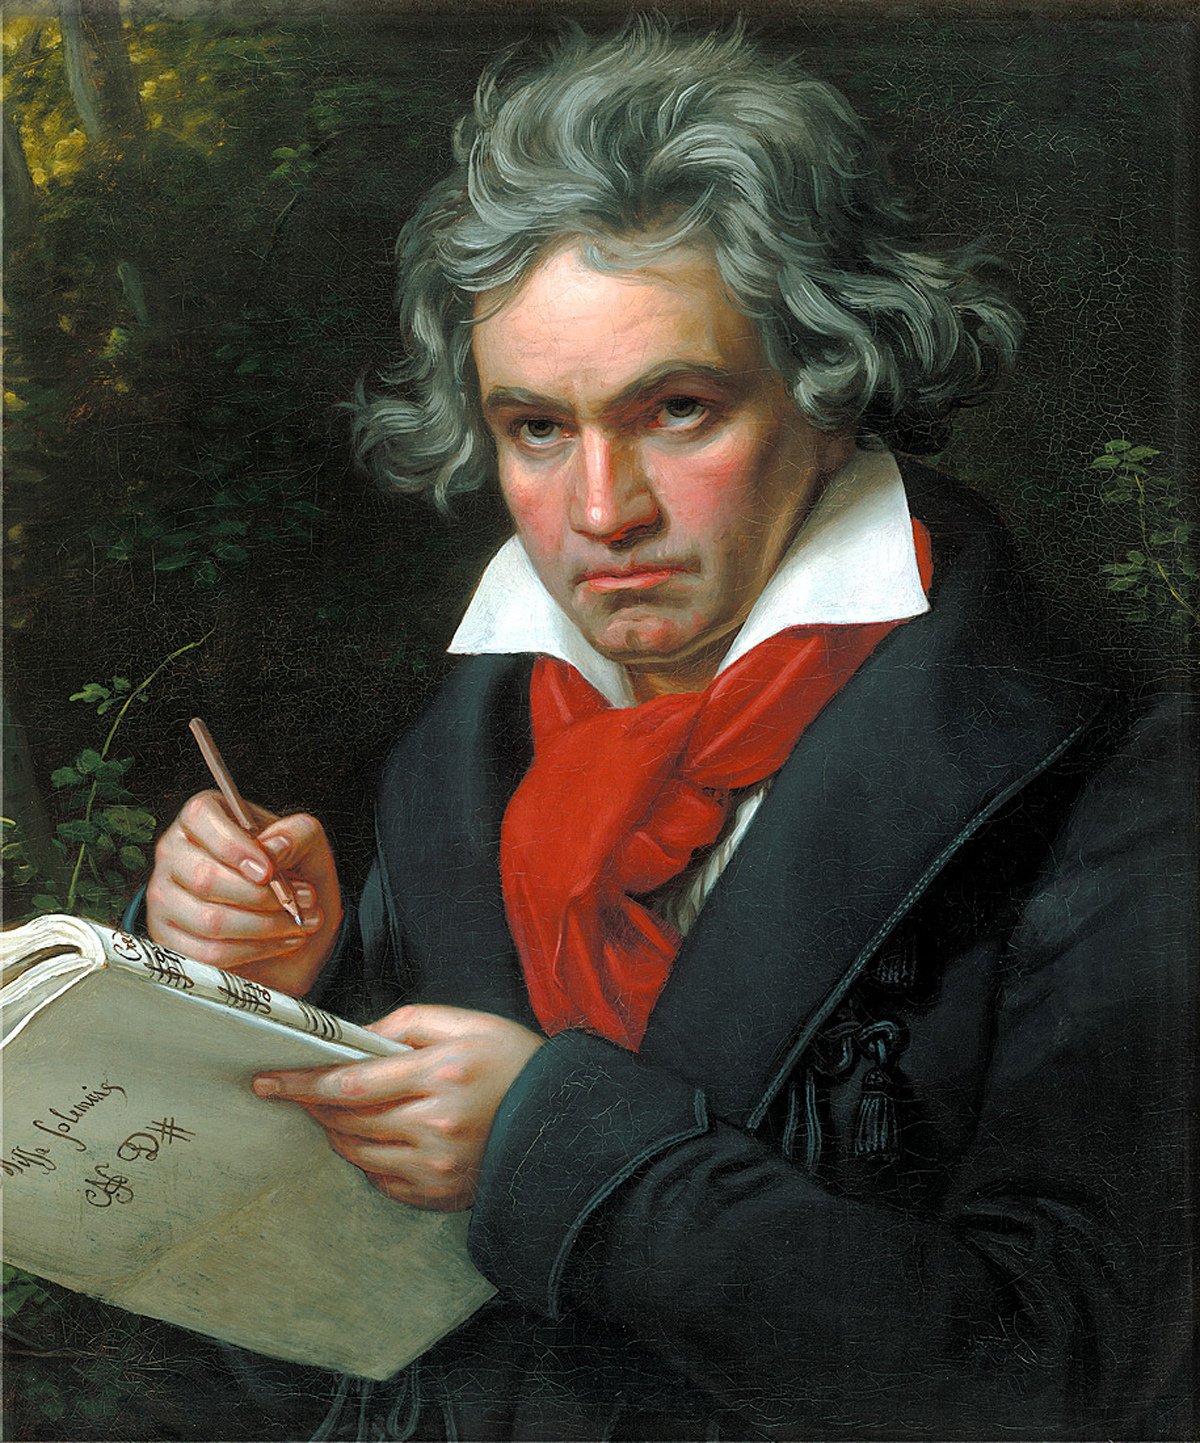 L.V. Beethoven